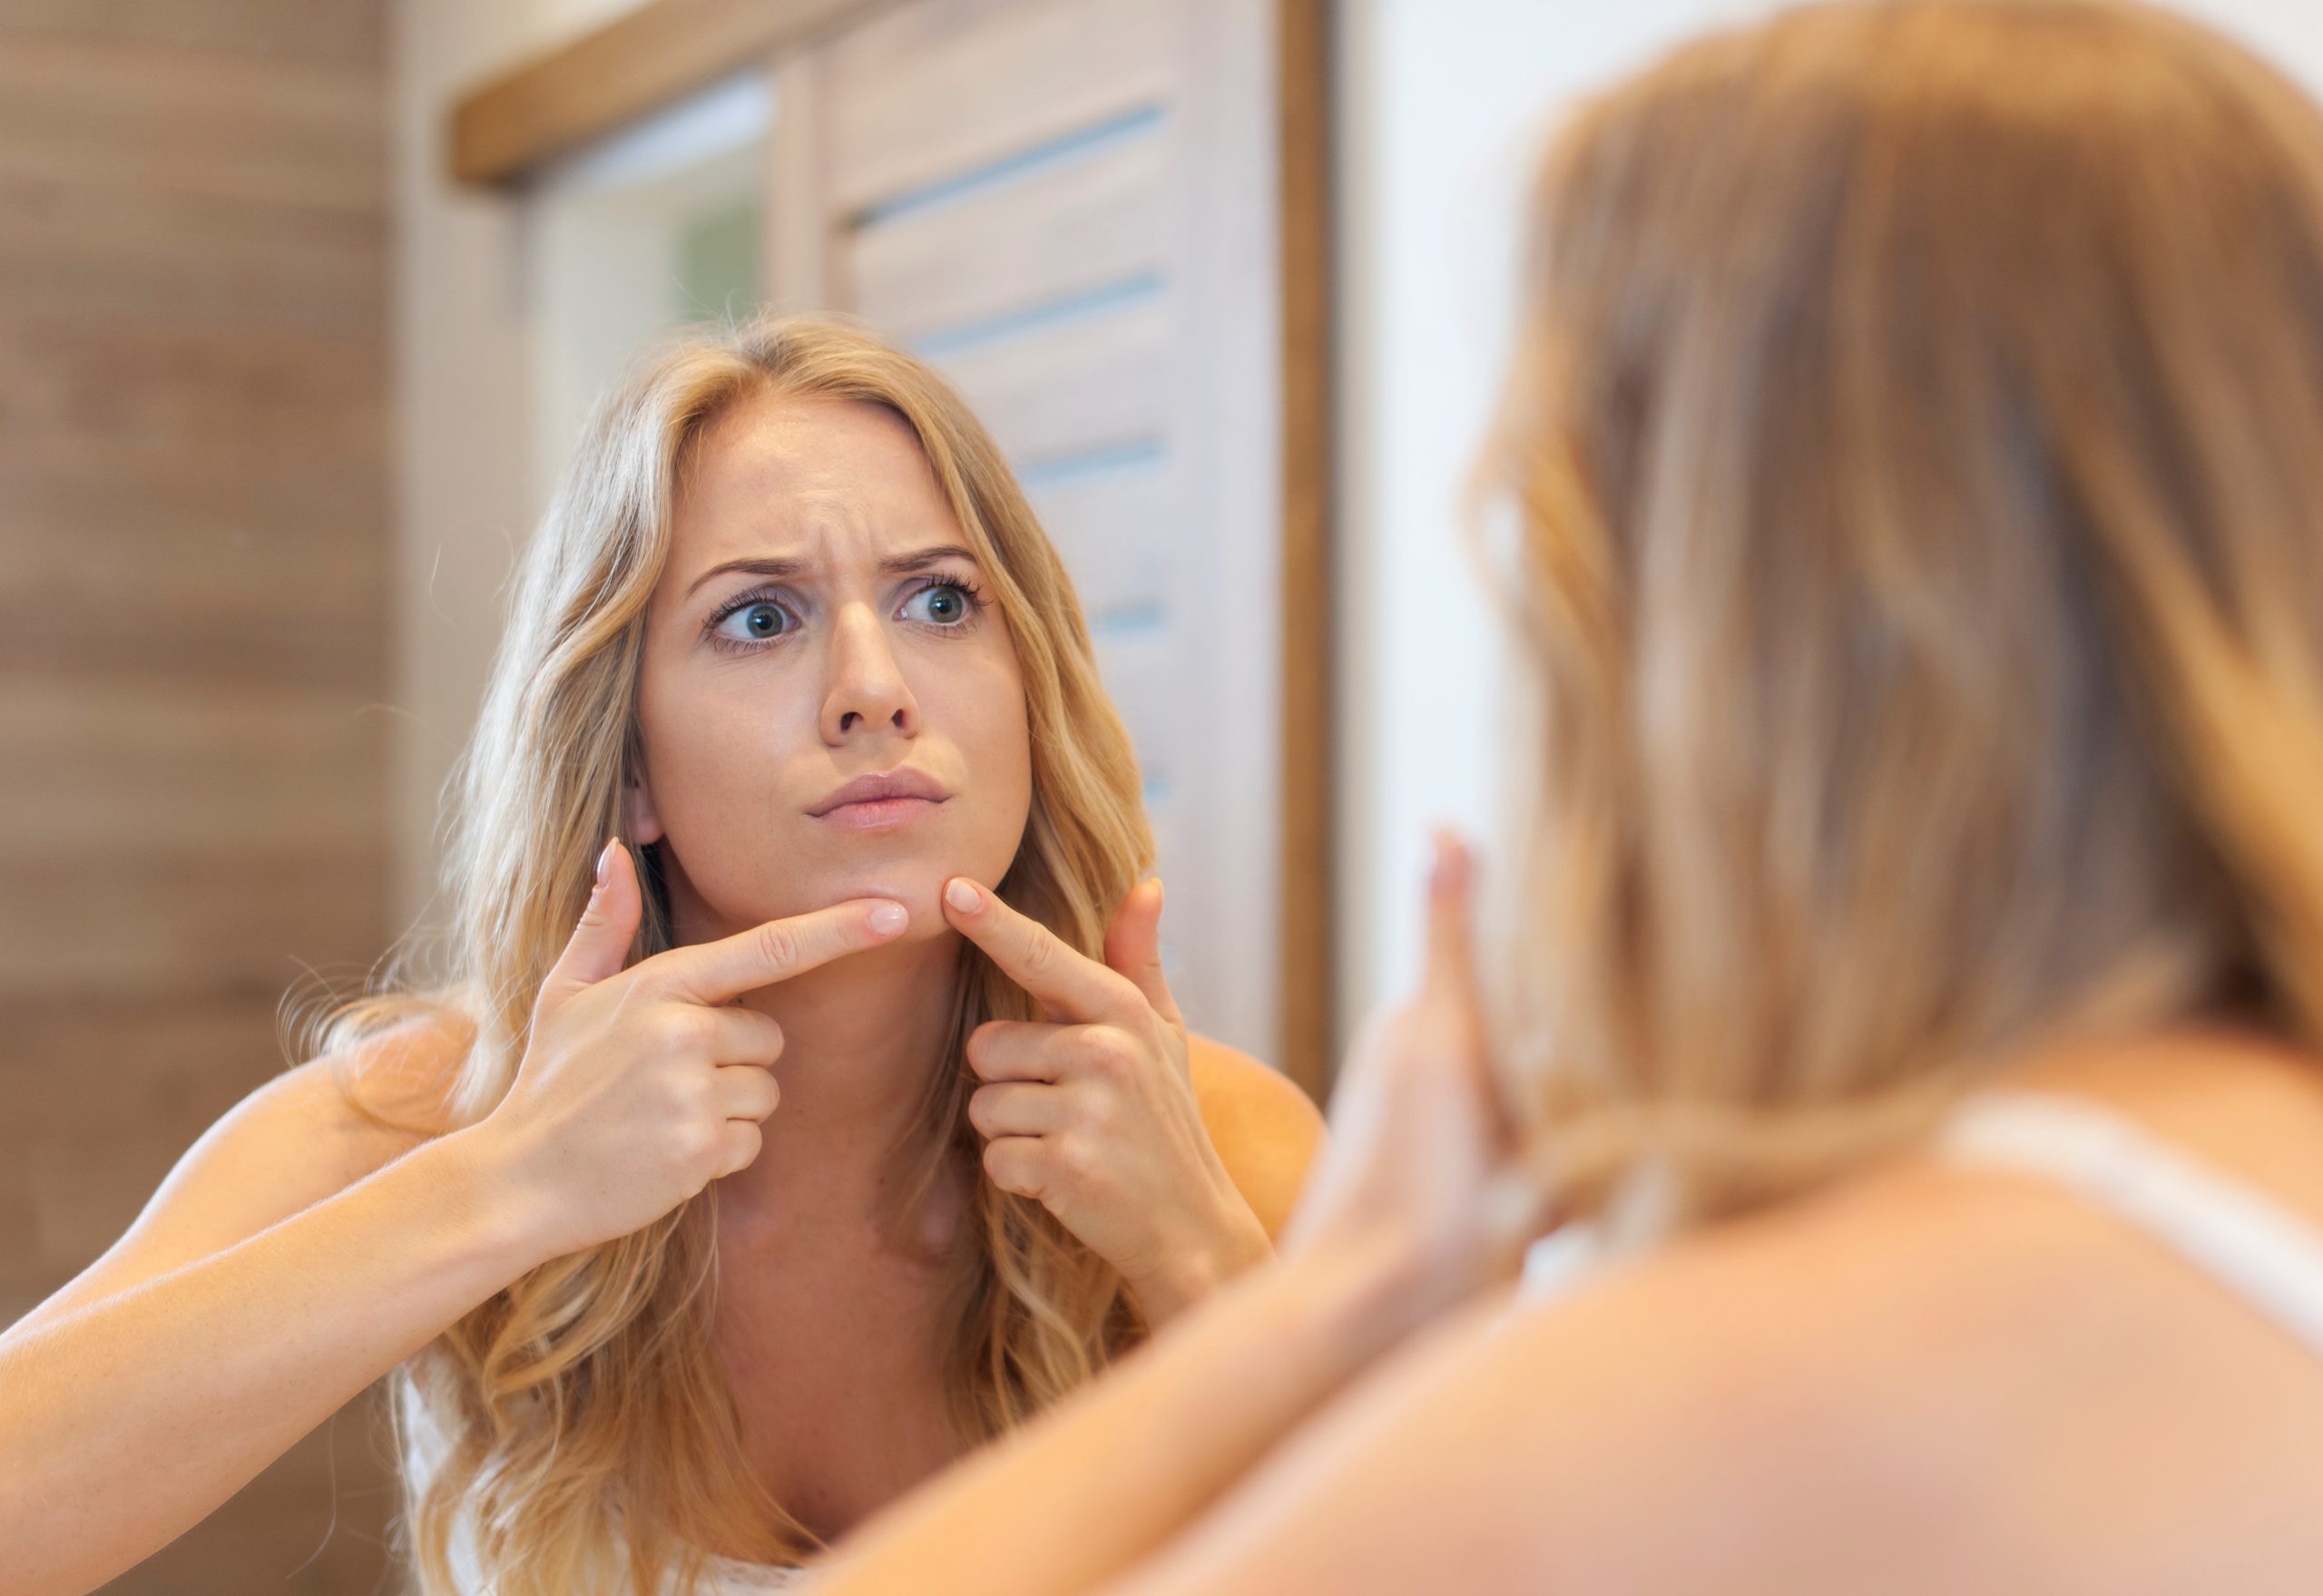 Entenda de uma vez por todas: O que causa acne?